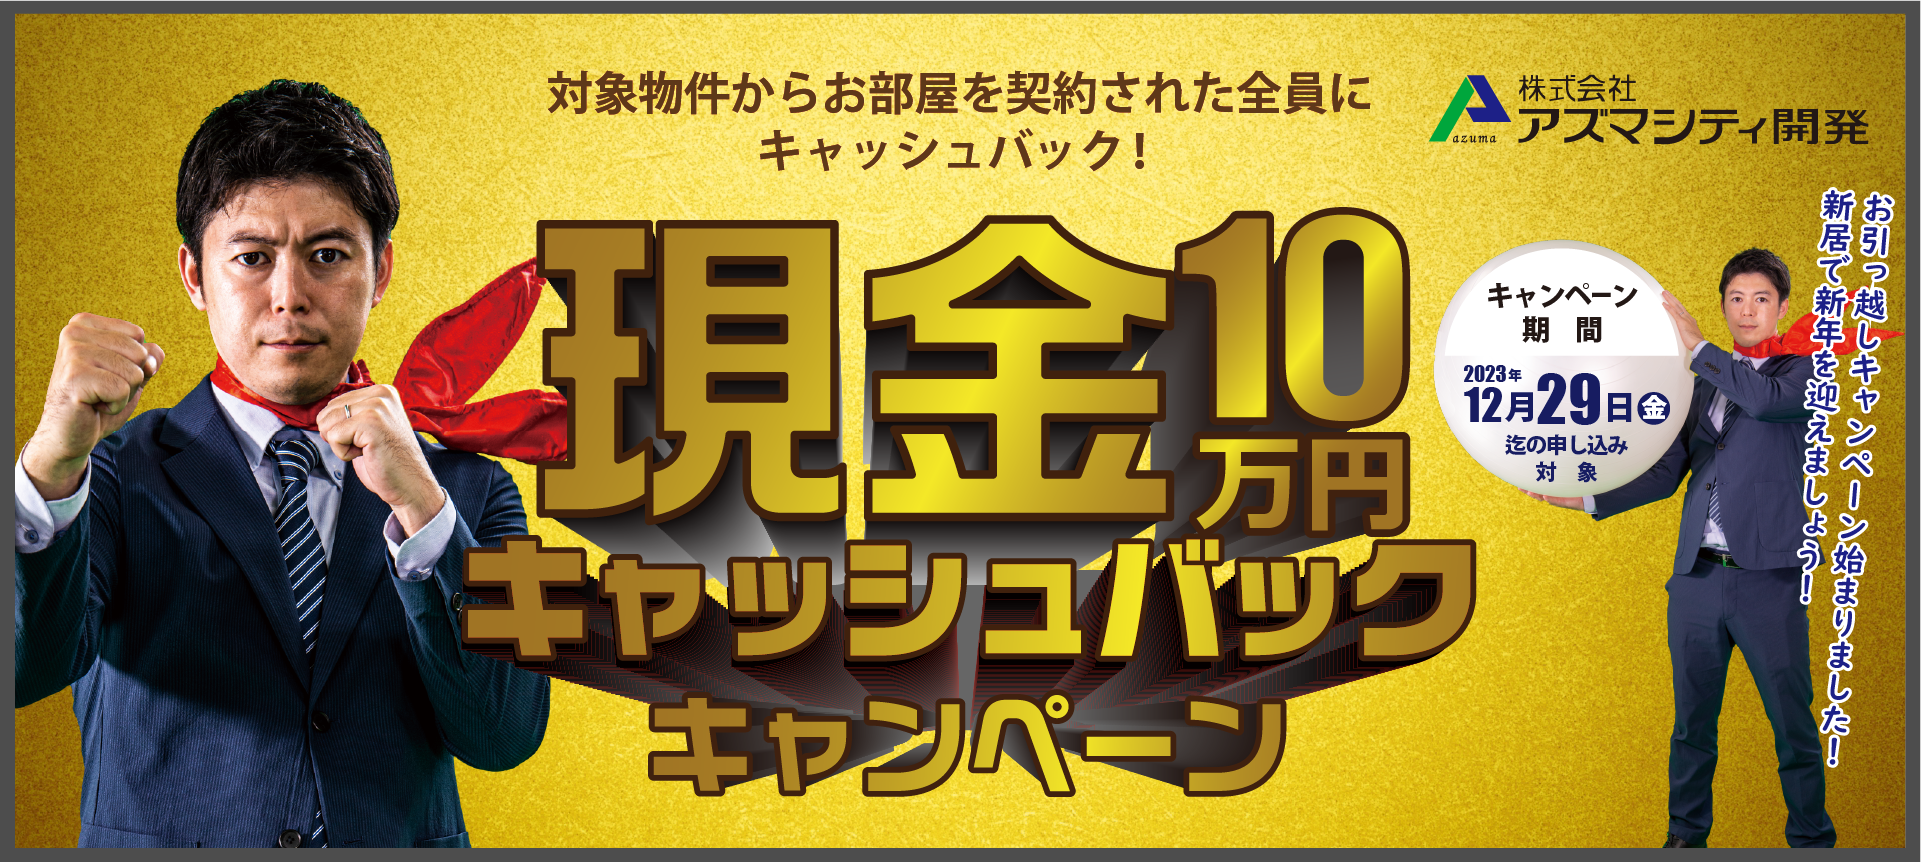 10万円キャッシュバックキャンペーン